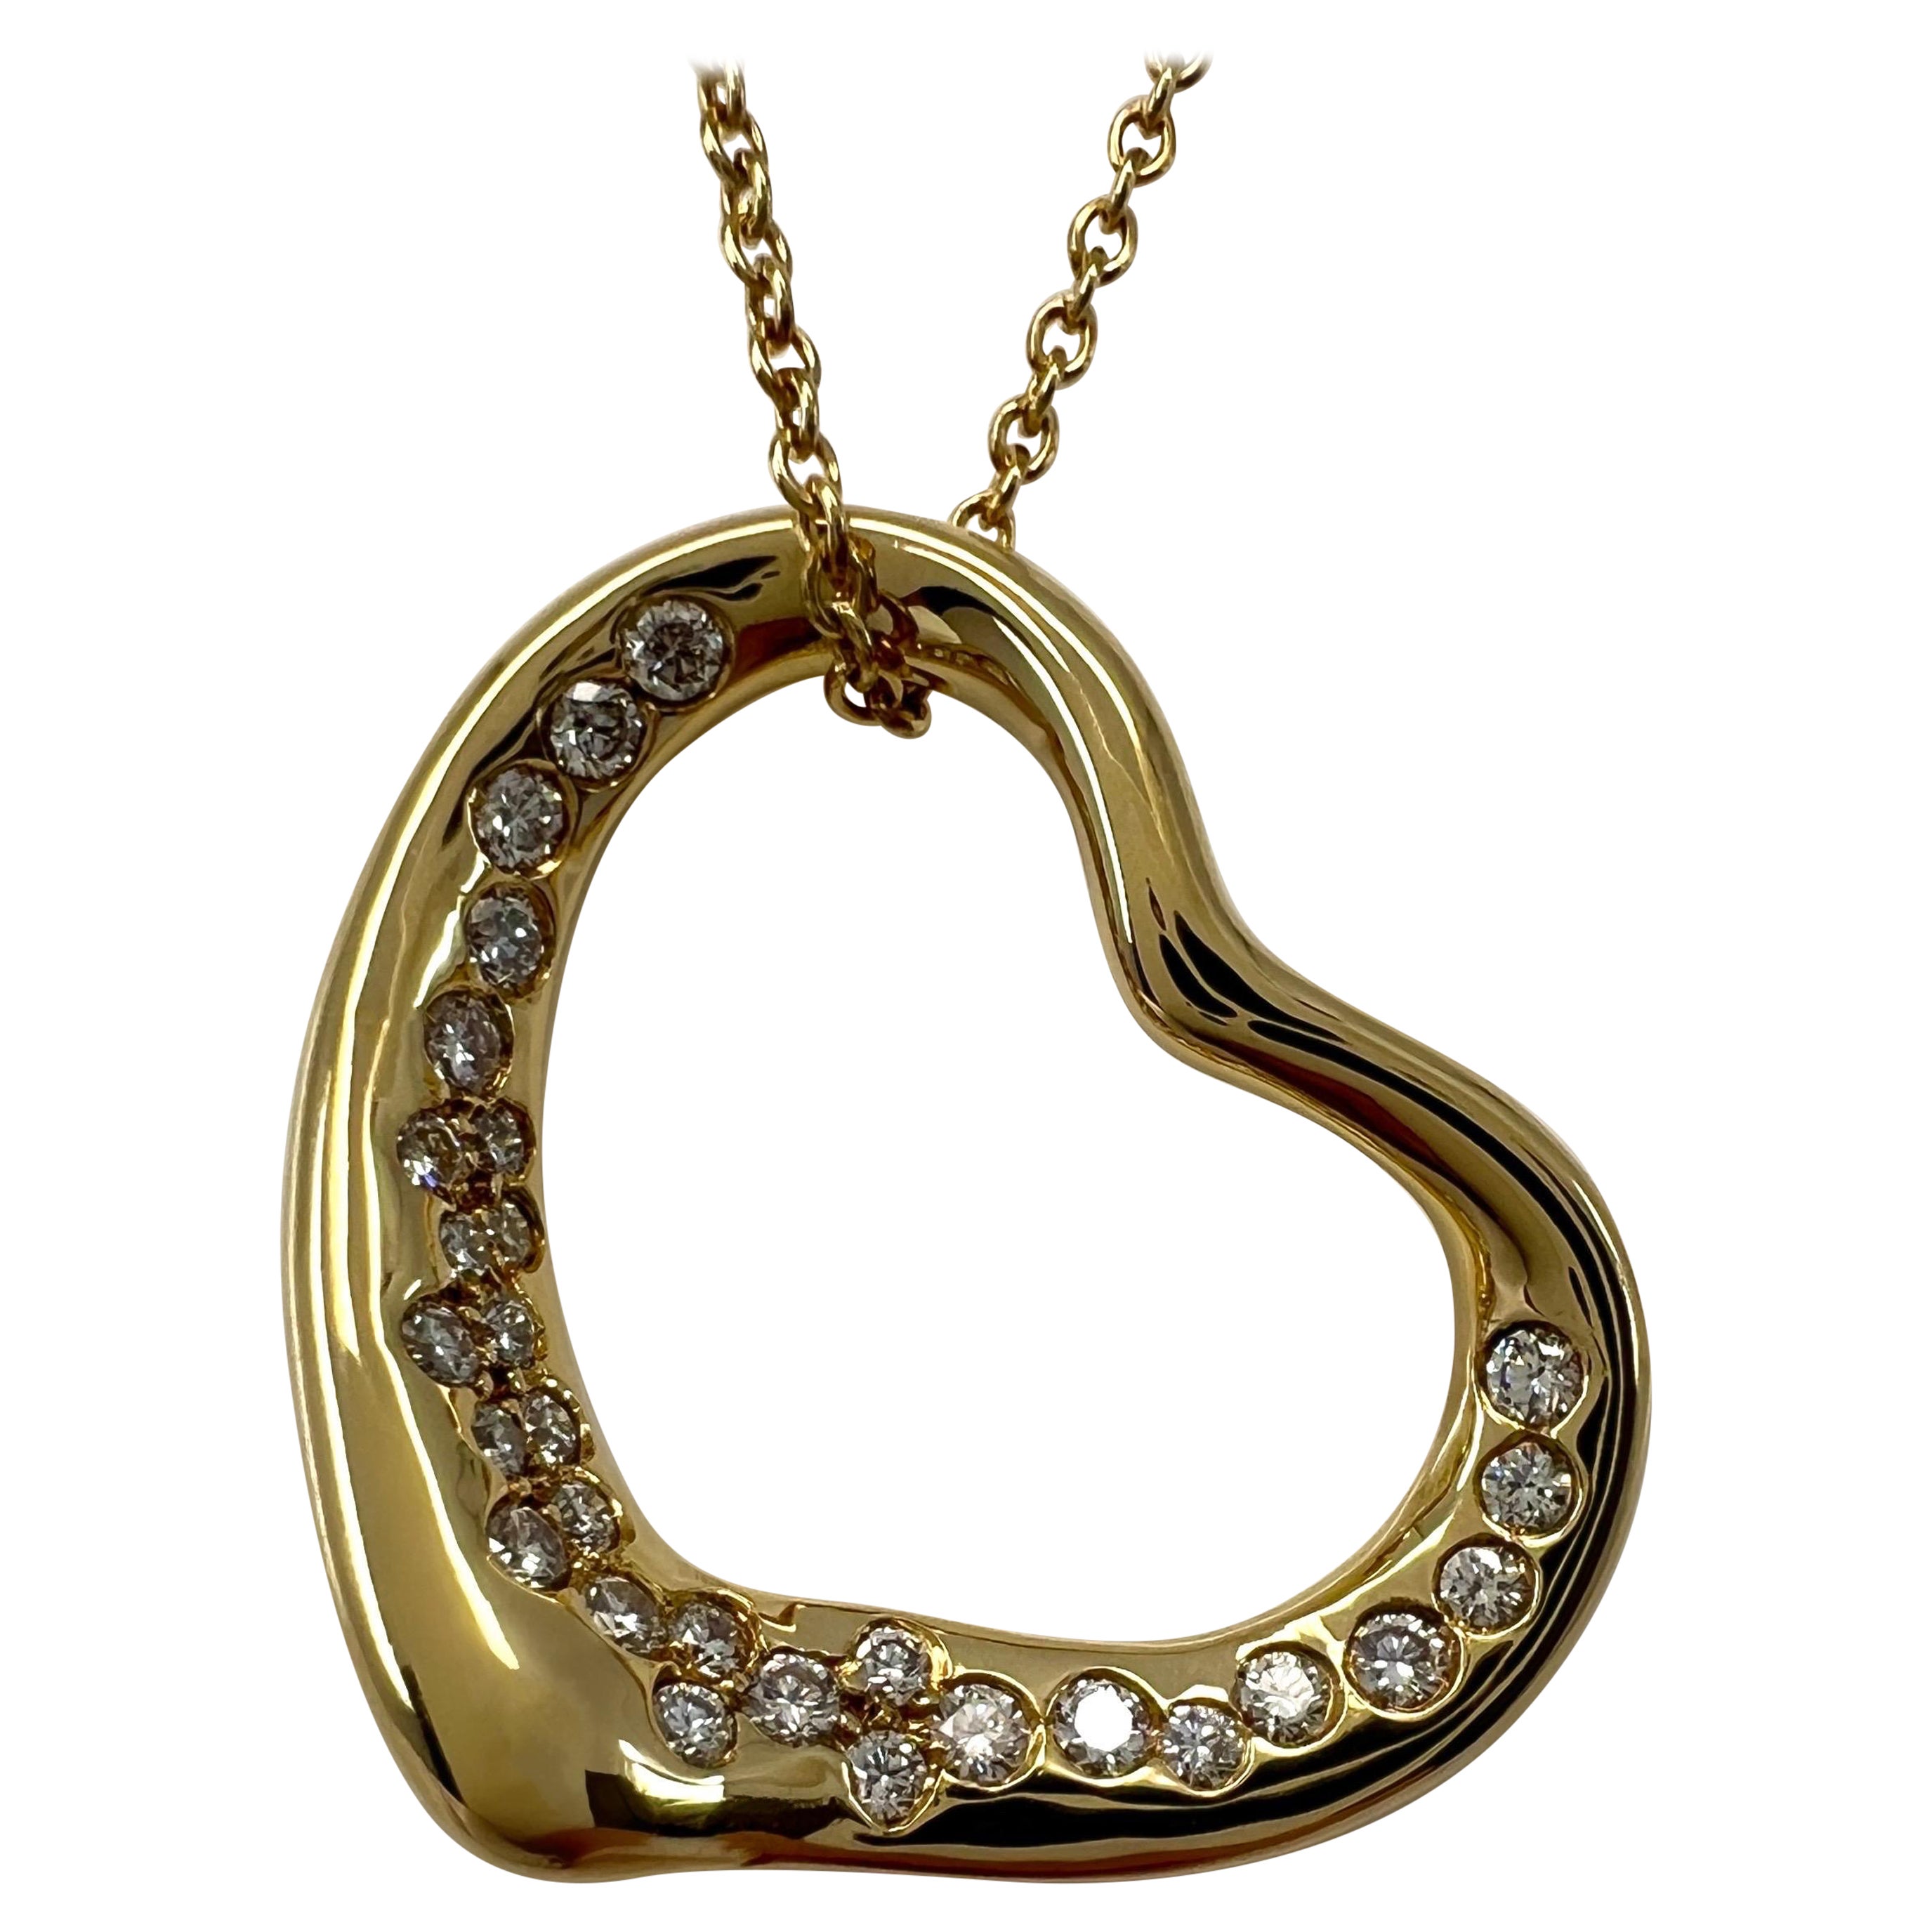 Tiffany & Co. Elsa Peretti, collier pendentif cœur ouvert en or jaune 18 carats avec diamants